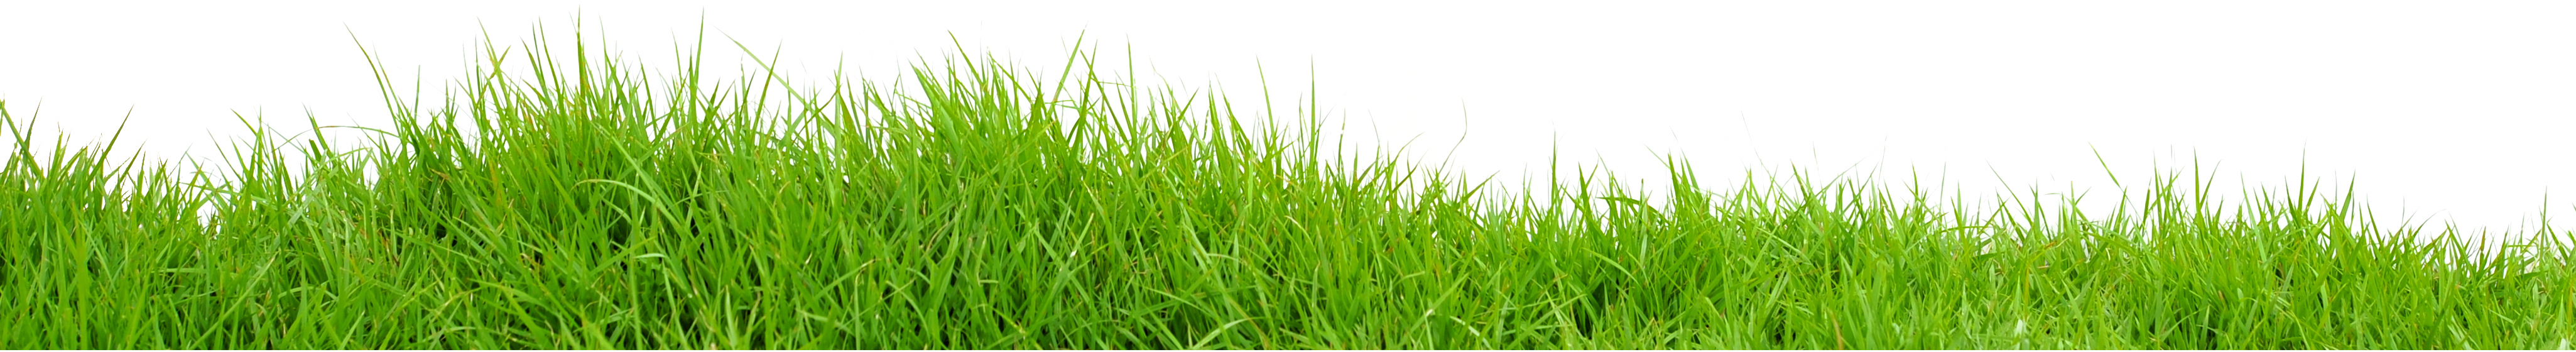 Imagen PNG de la hierba verde